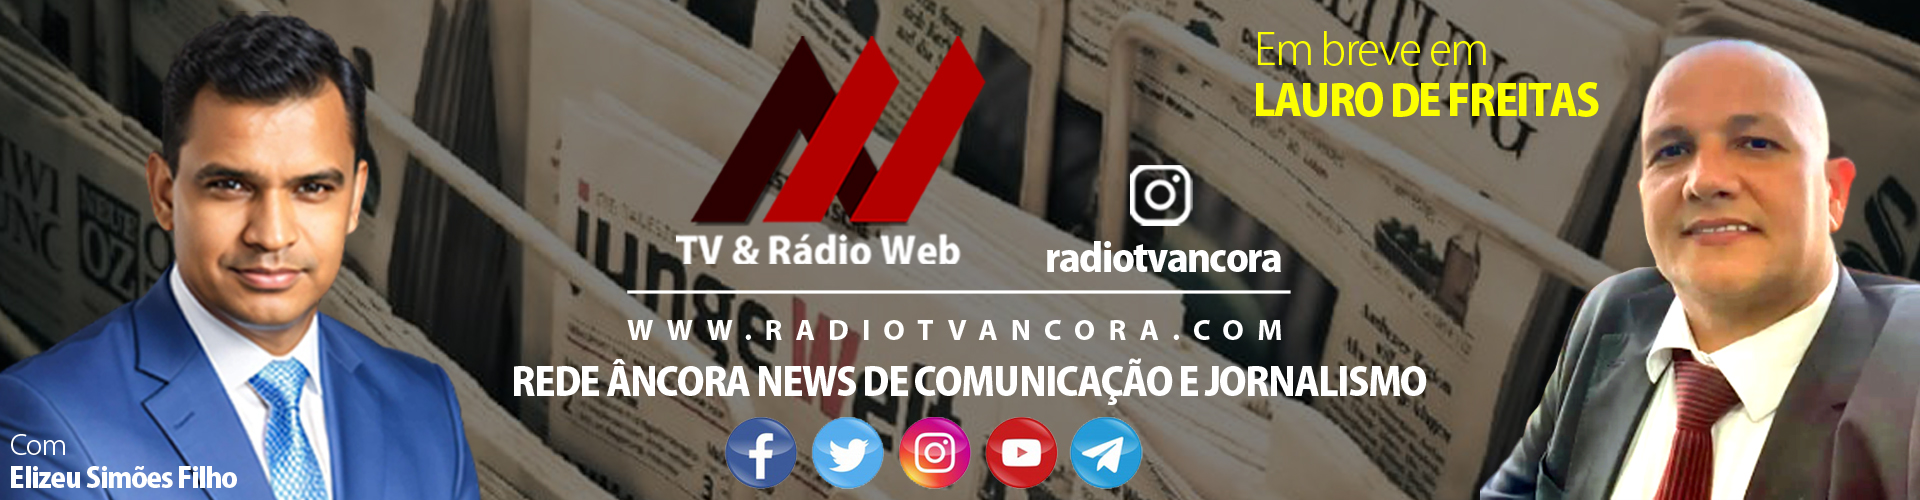 Rede Âncora News